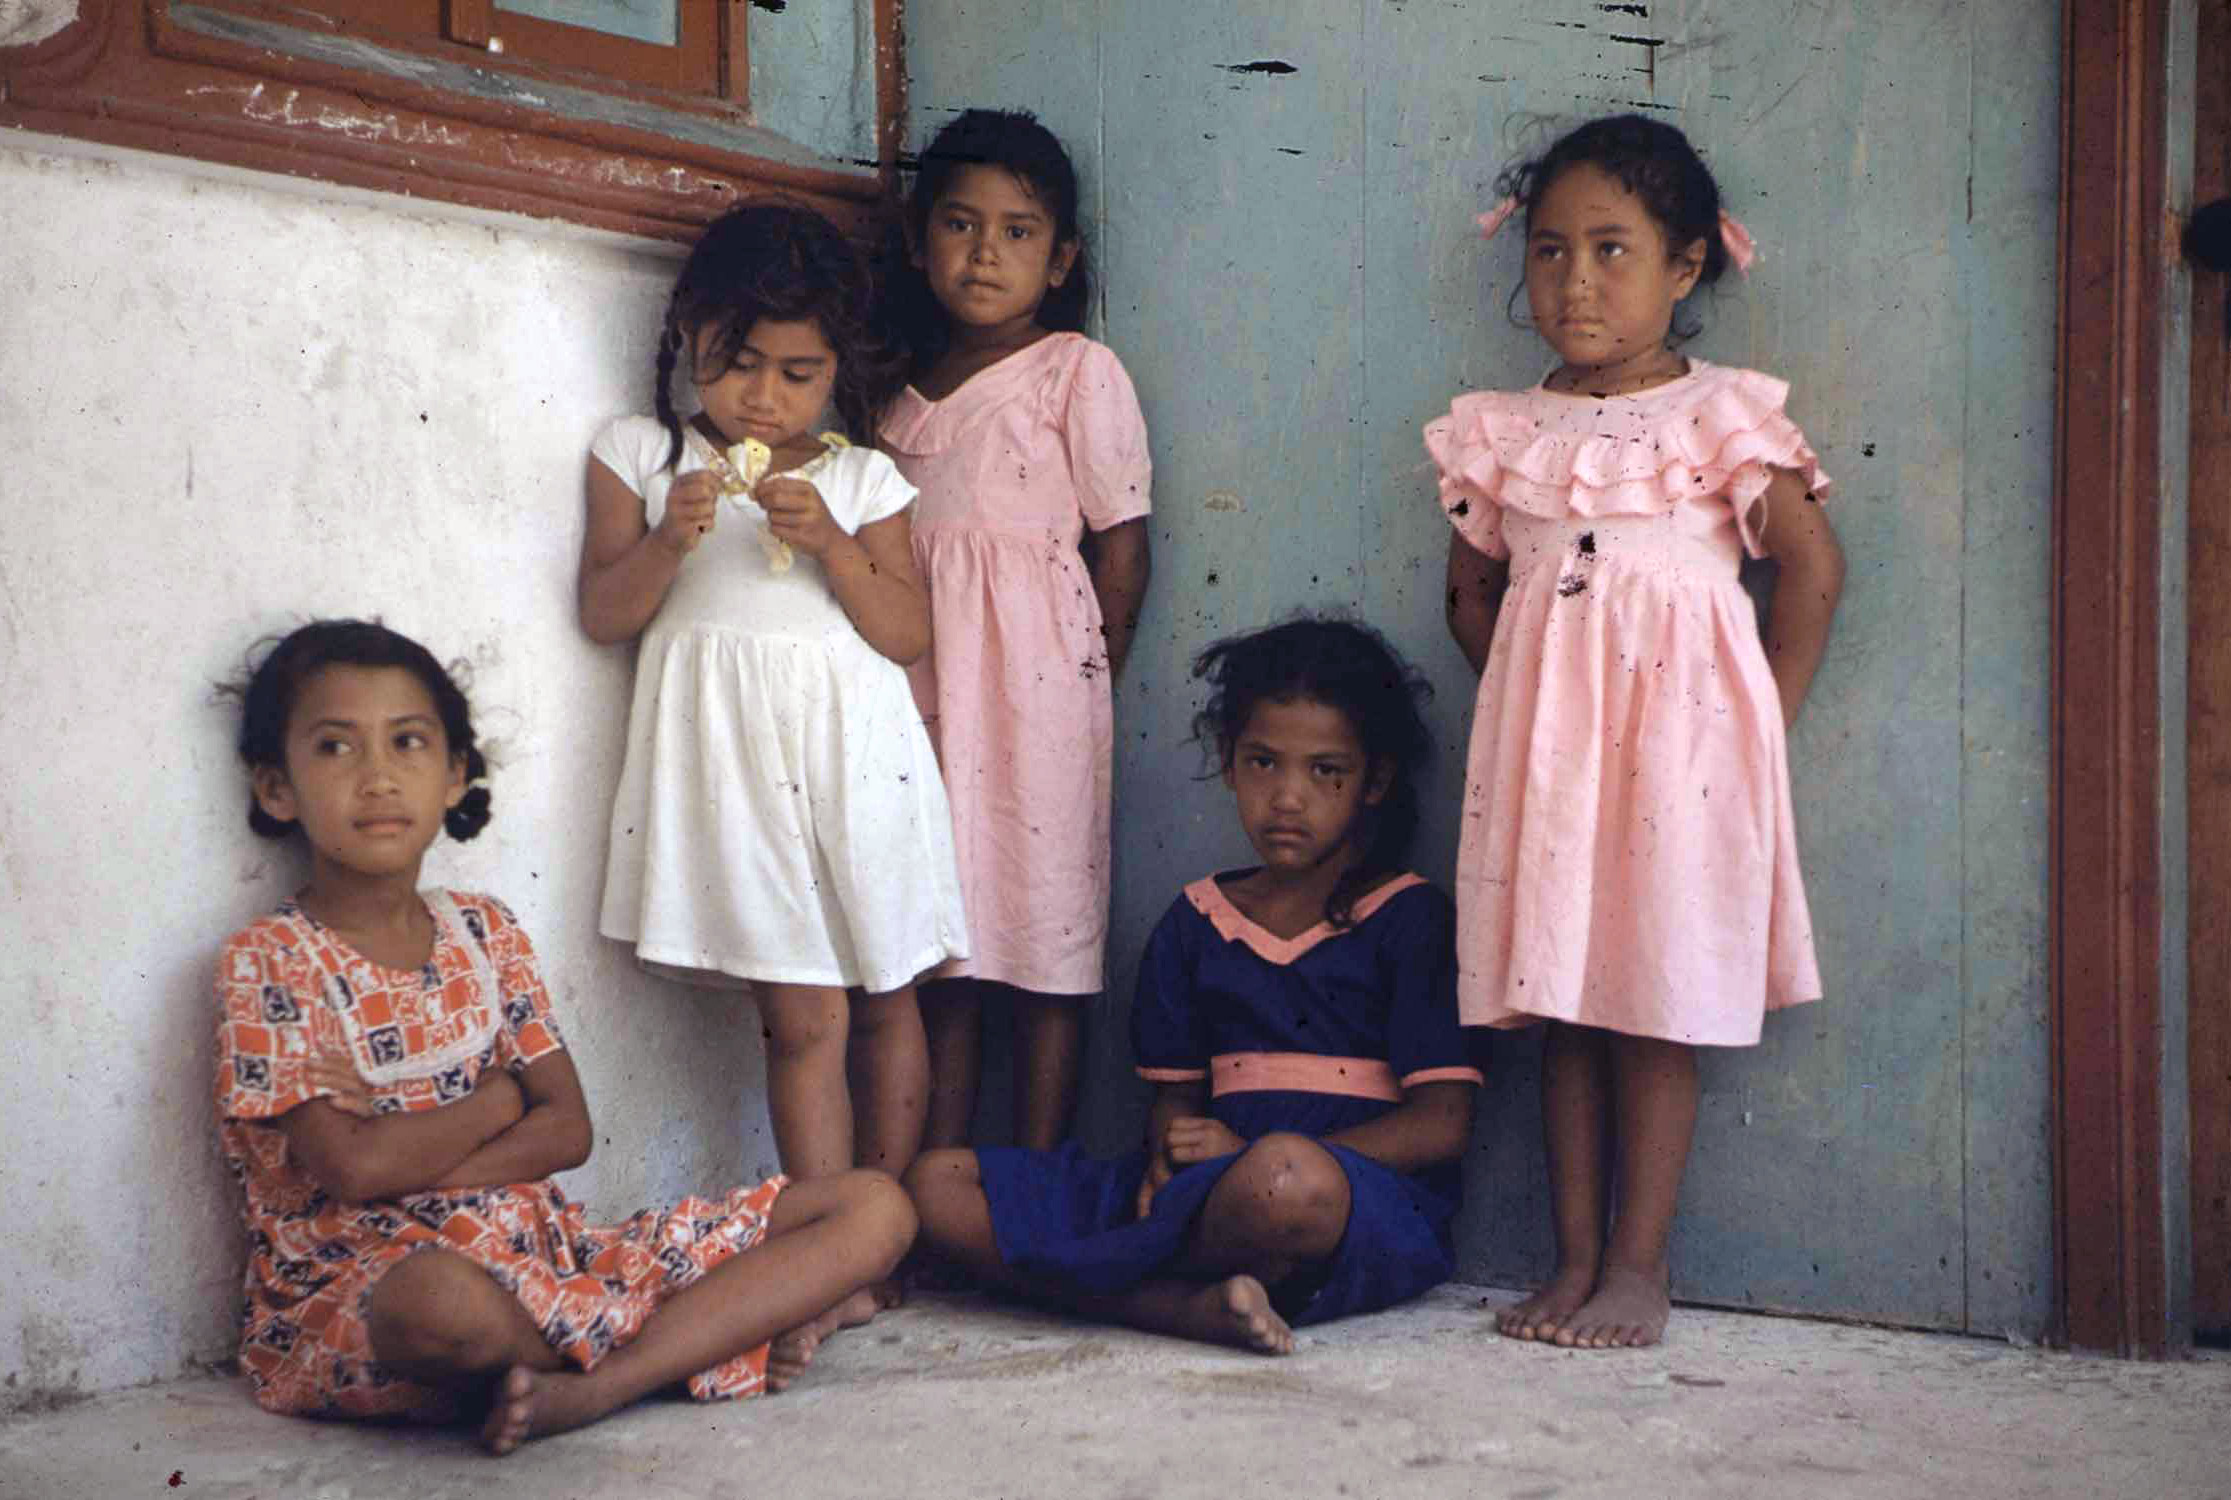 Children in Tahiti, 1955.